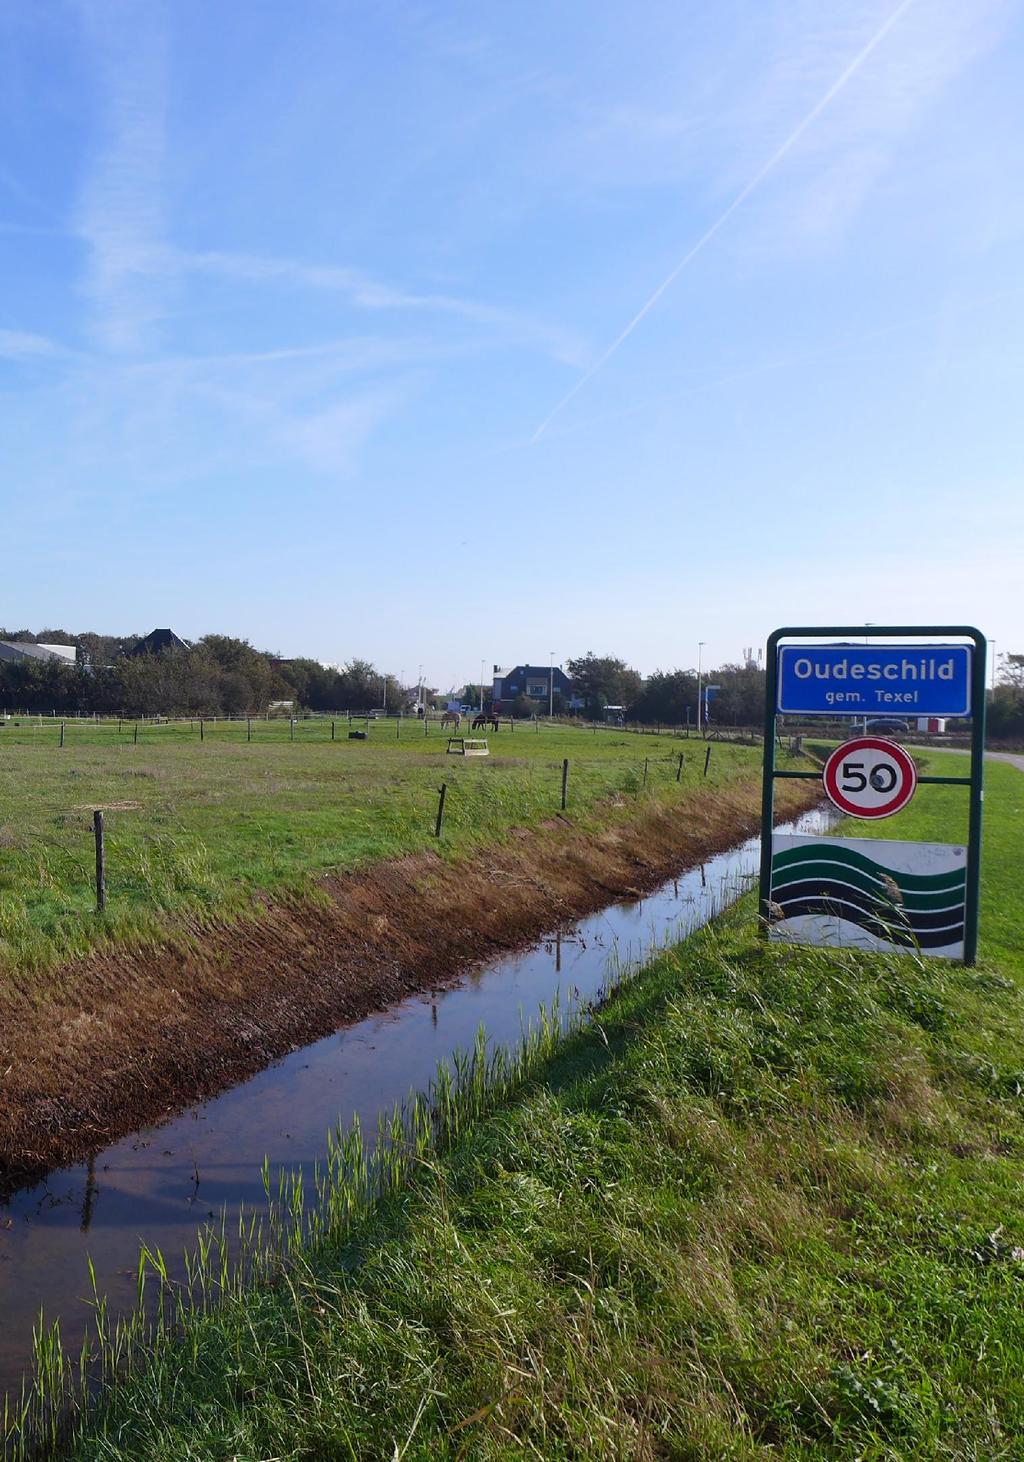 Schilderweg 239 Oudeschild Kadastrale gegevens: Gemeente Texel, sectie N nummer 2210 Soort woning: Vrijstaande woonstolp met schuren Woonbestemming: Thans agrarische bestemming